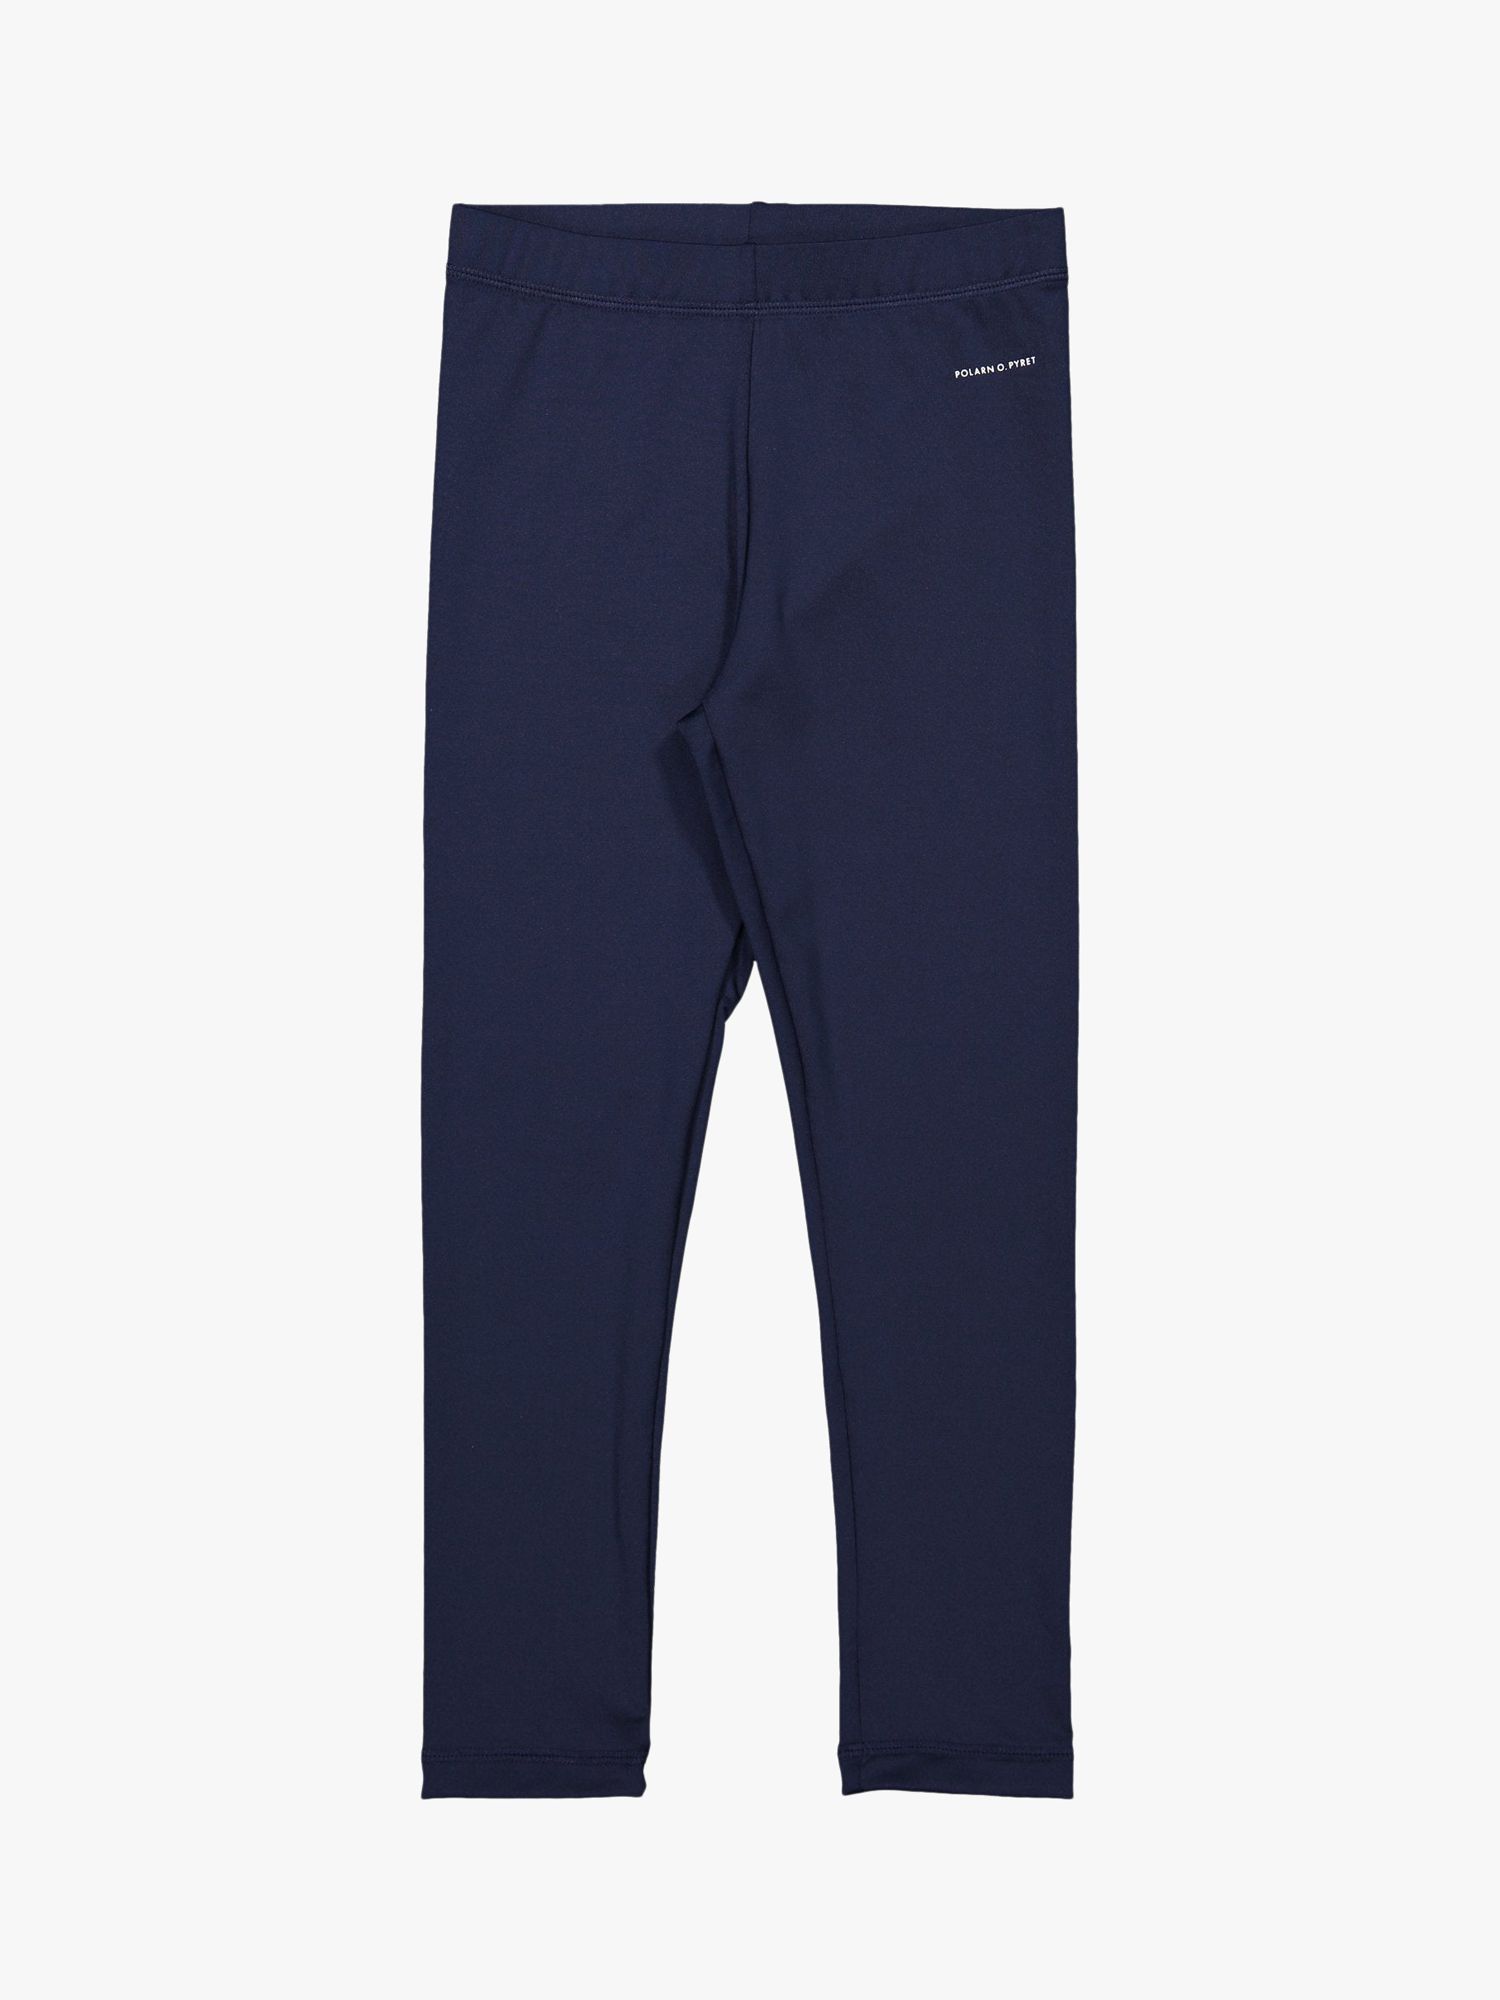 Детские брюки для плавания Polarn O. Pyret, темно-синие брюки o stin синие 44 размер